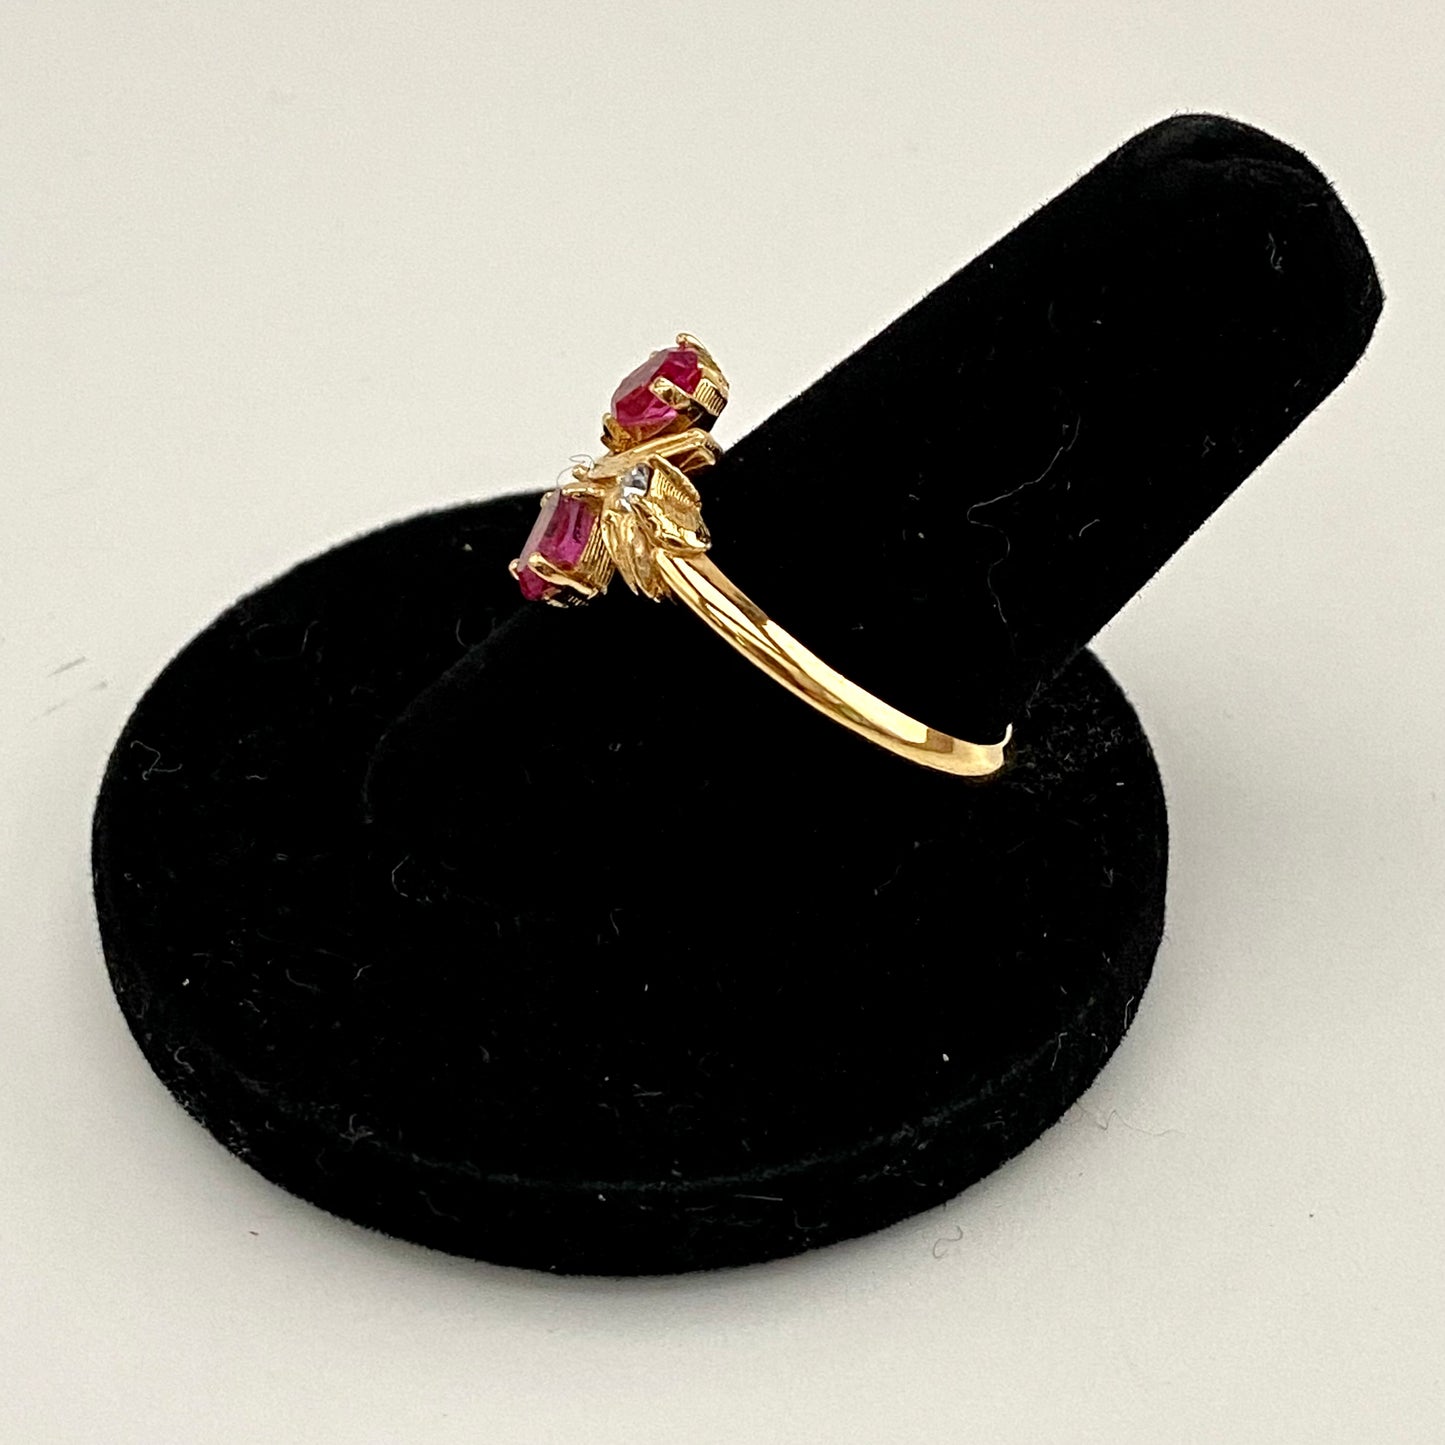 1975 Avon Royal Radiance Ring